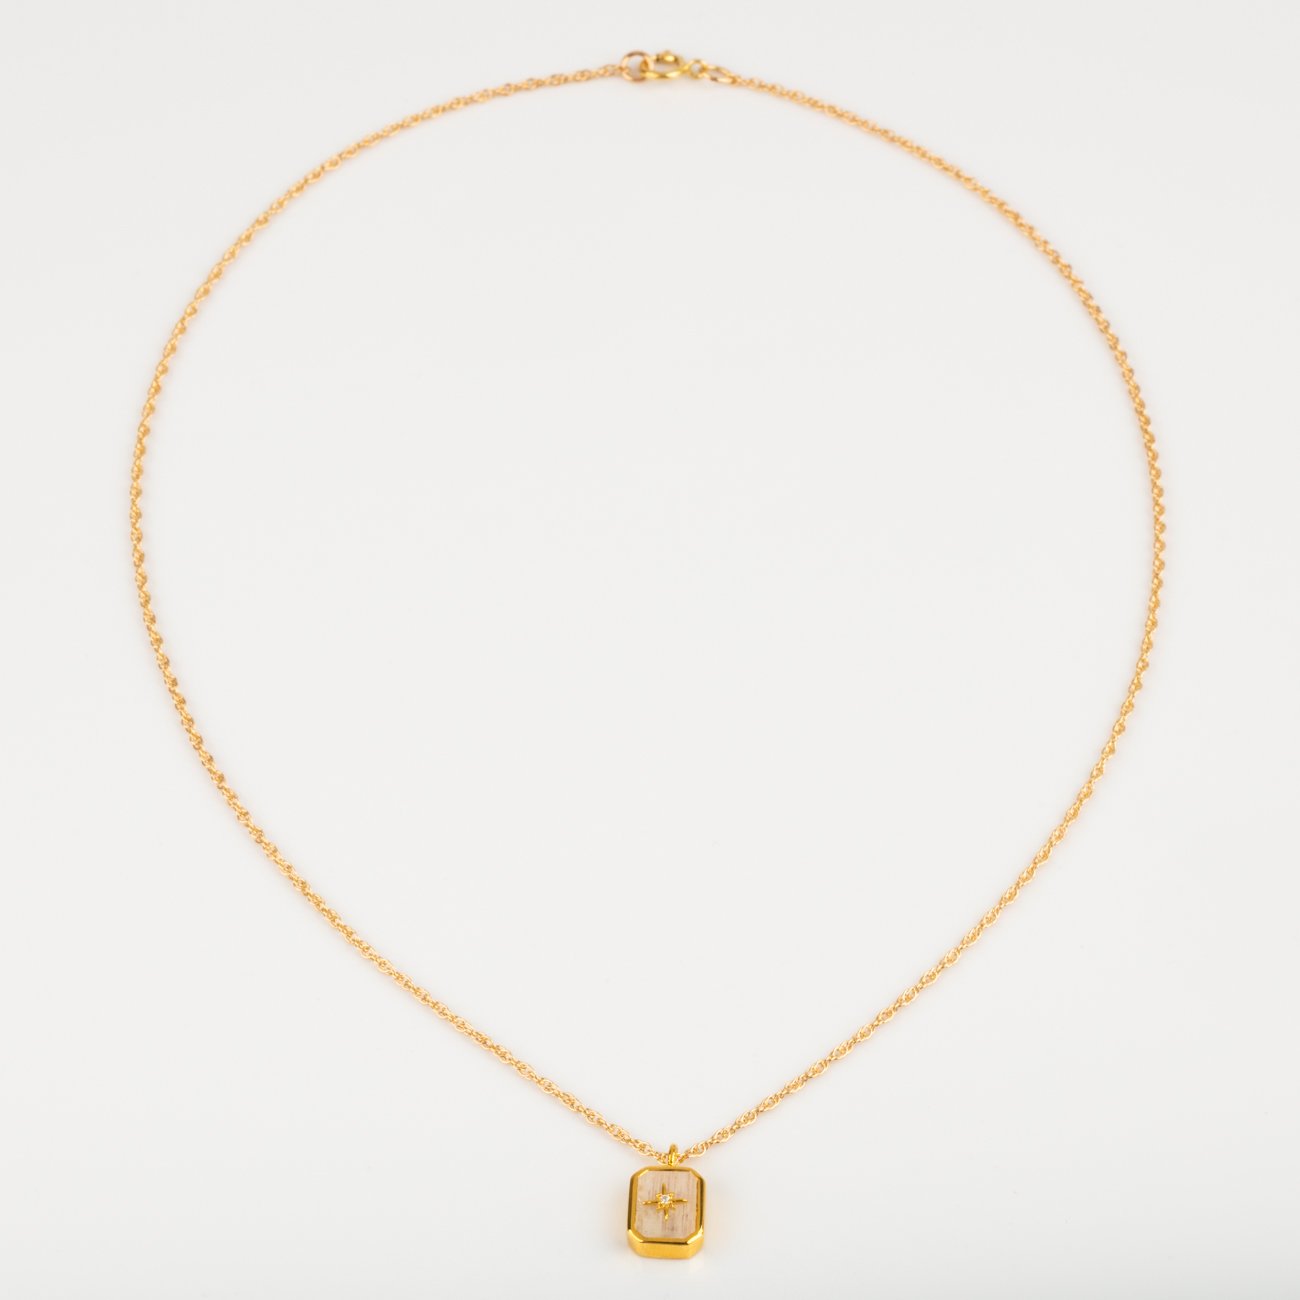 Rainbow Moonstone & Diamond Manifest Your Dreams Pendant Necklace necklaces La Kaiser 